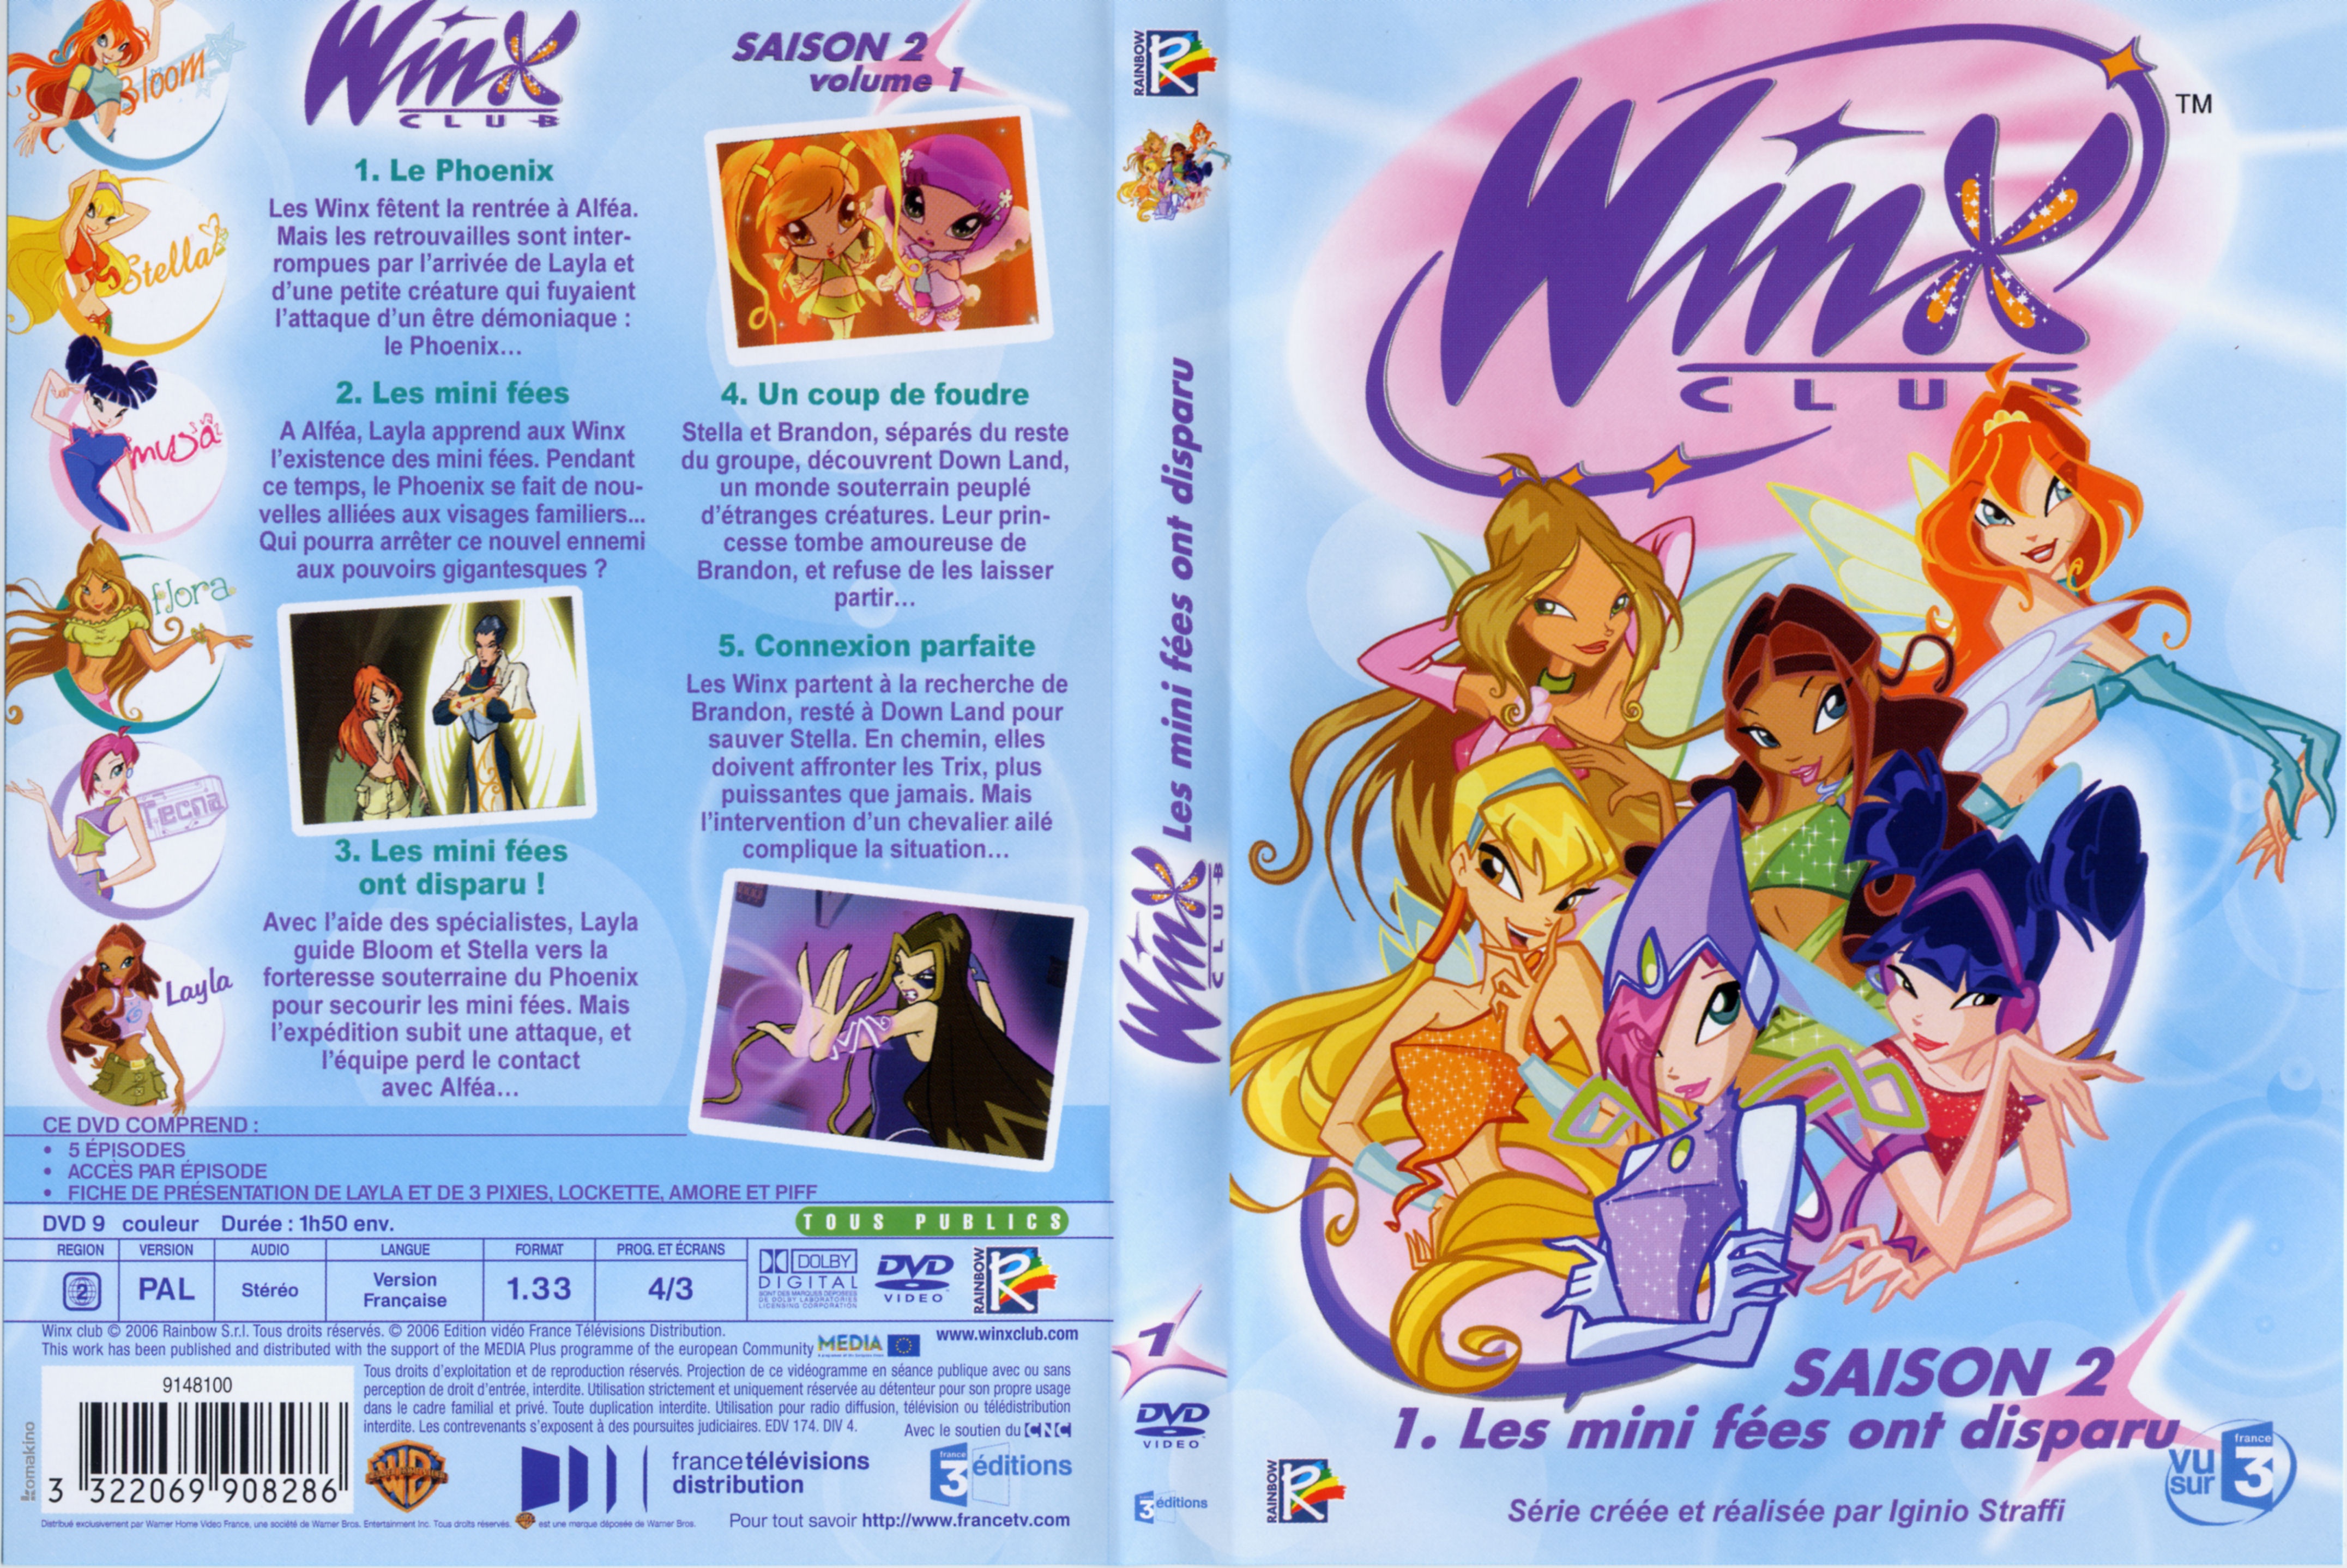 Jaquette DVD Winx club saison 2 vol 1